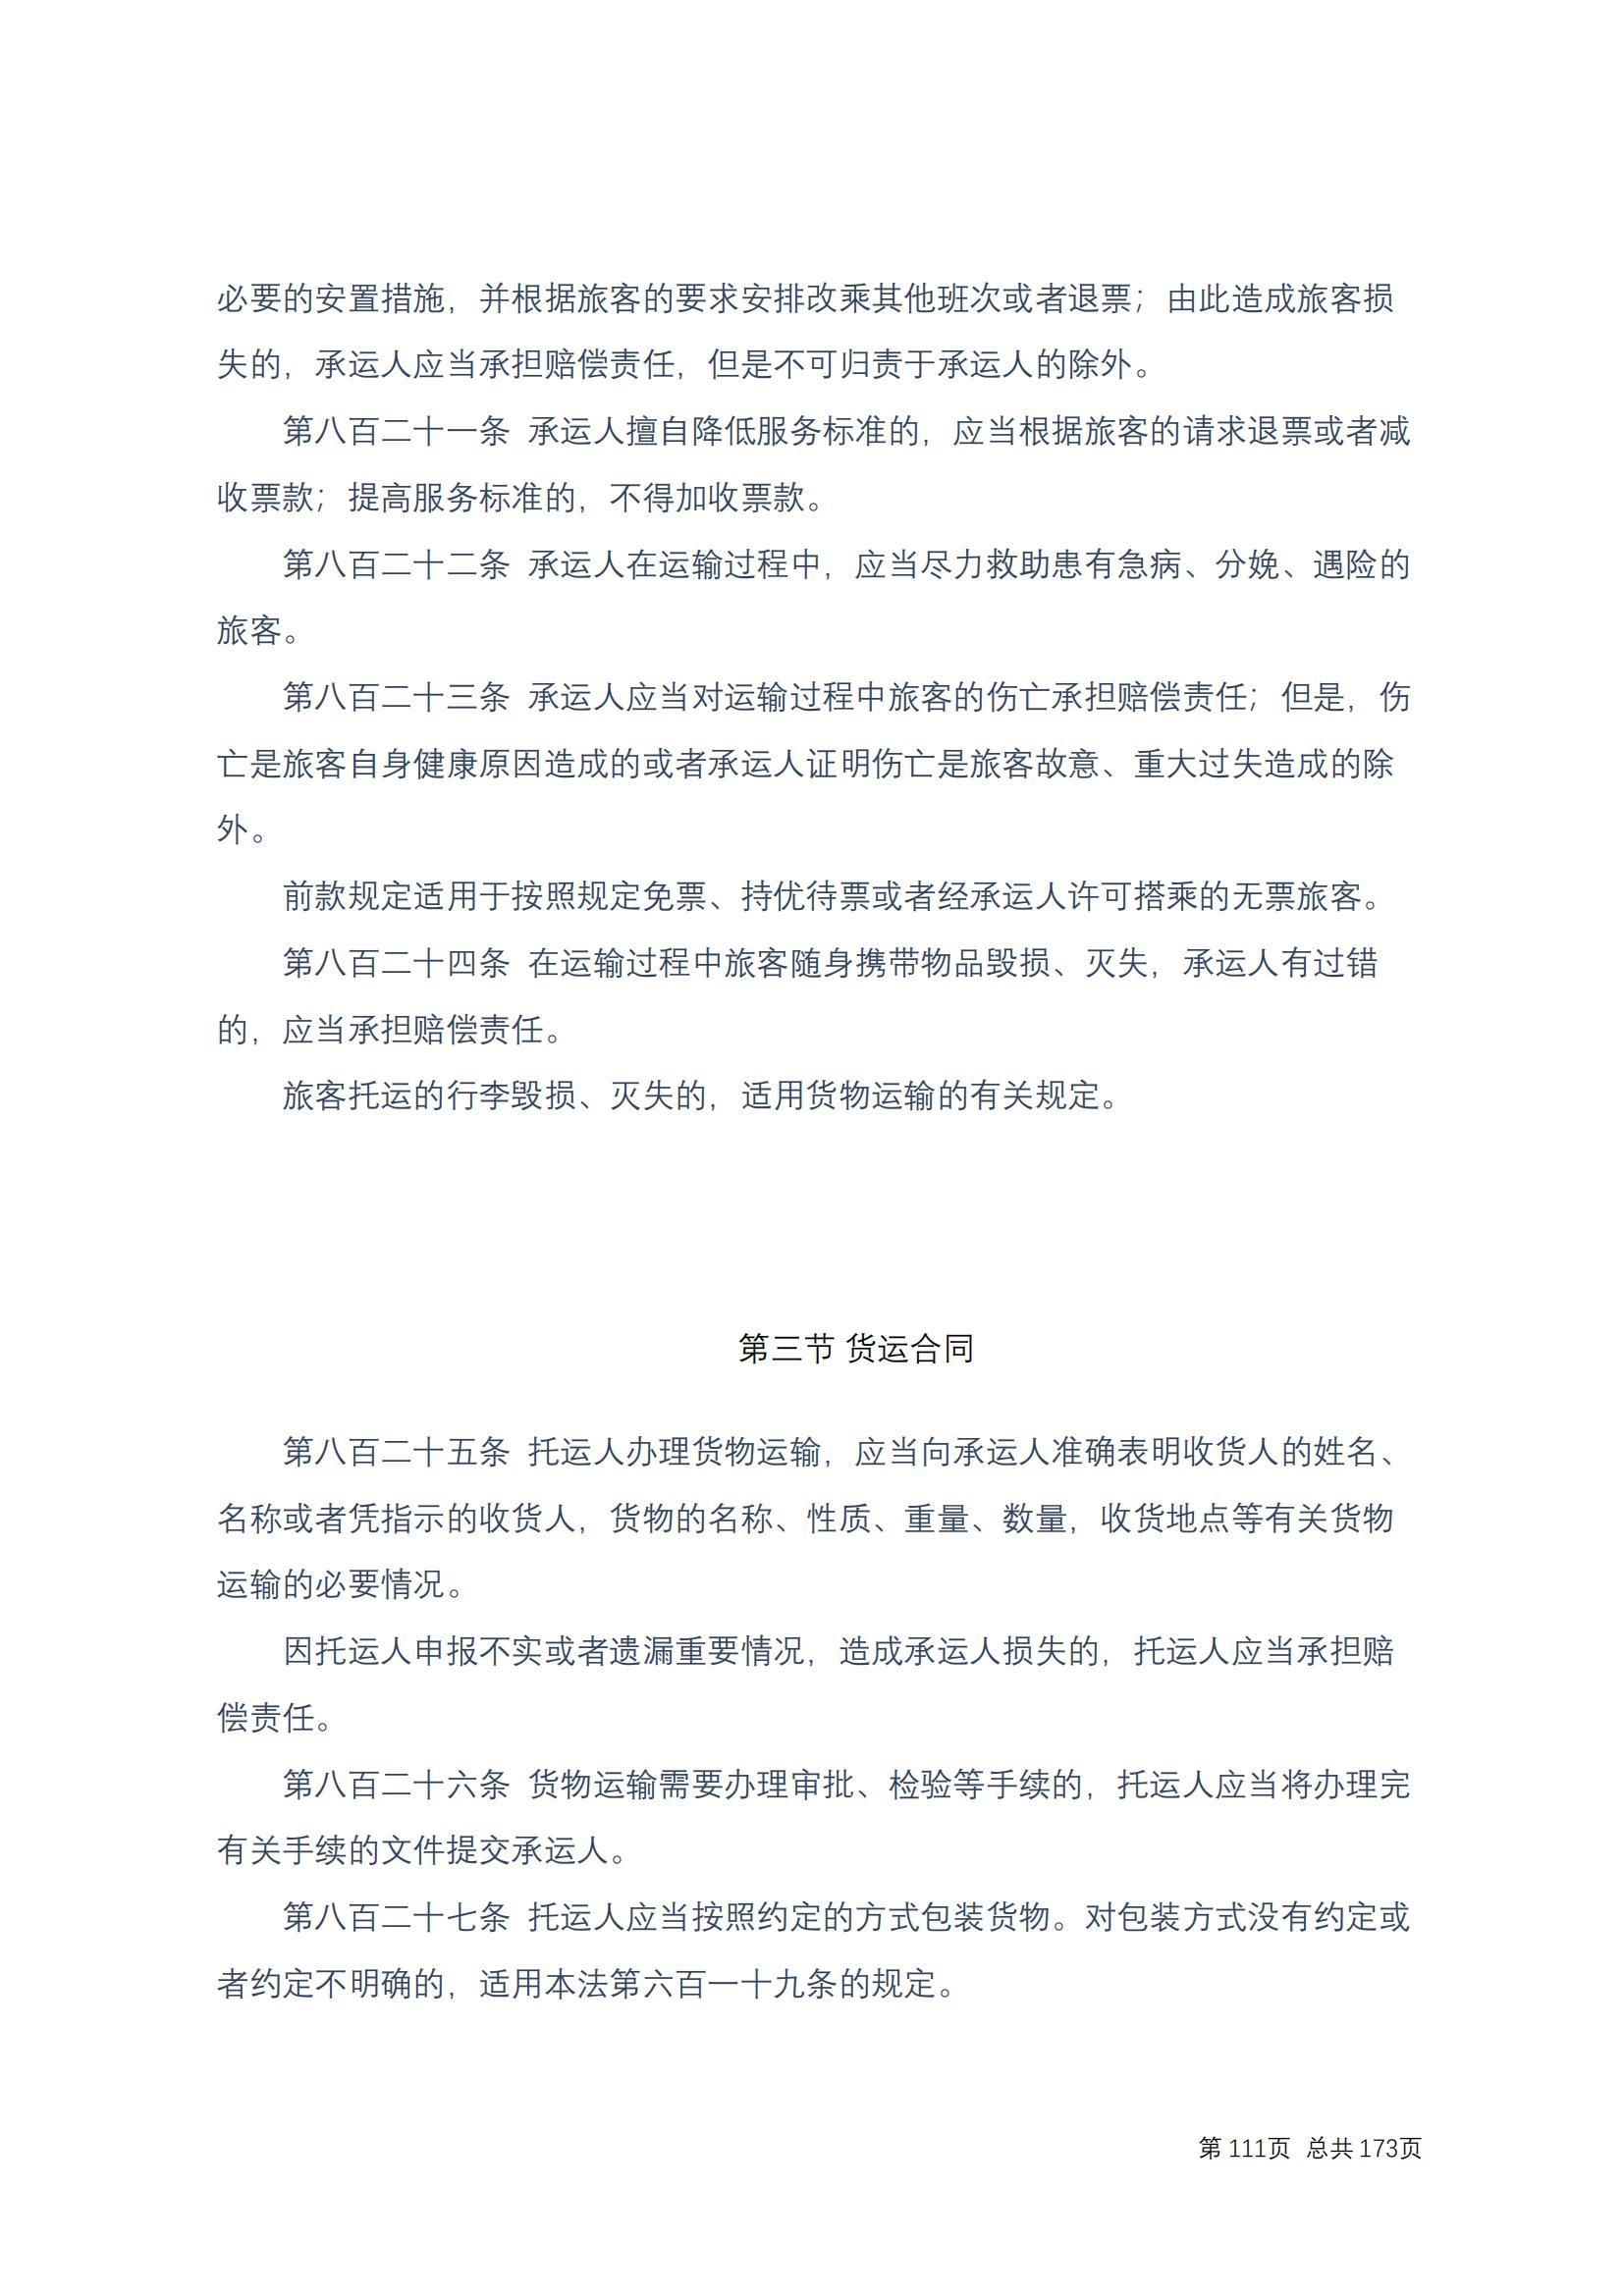 中华人民共和国民法典 修改过_110